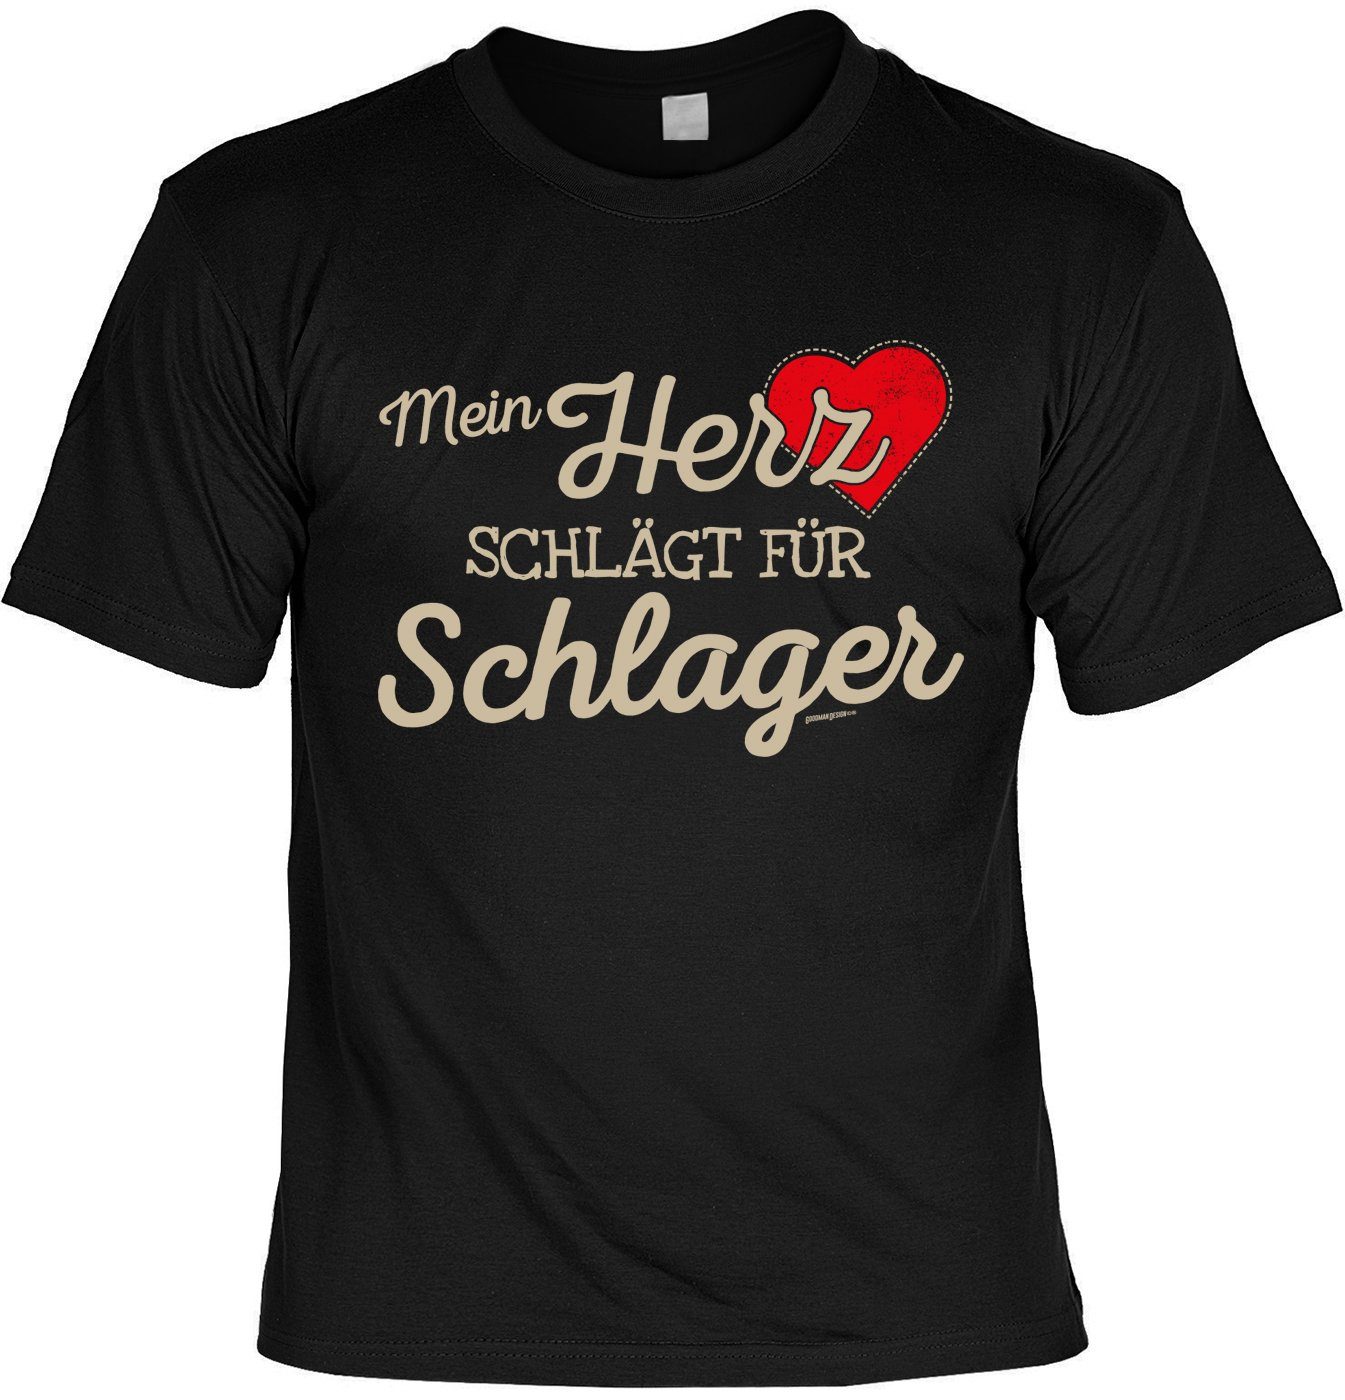 Art & Detail Shirt T-Shirt Mein HERZ schlägt für Schlager, Weihnachten - Sprüche Fun T-shirt Partner, Look, Familie, Schlager, Party | Trachtenshirts